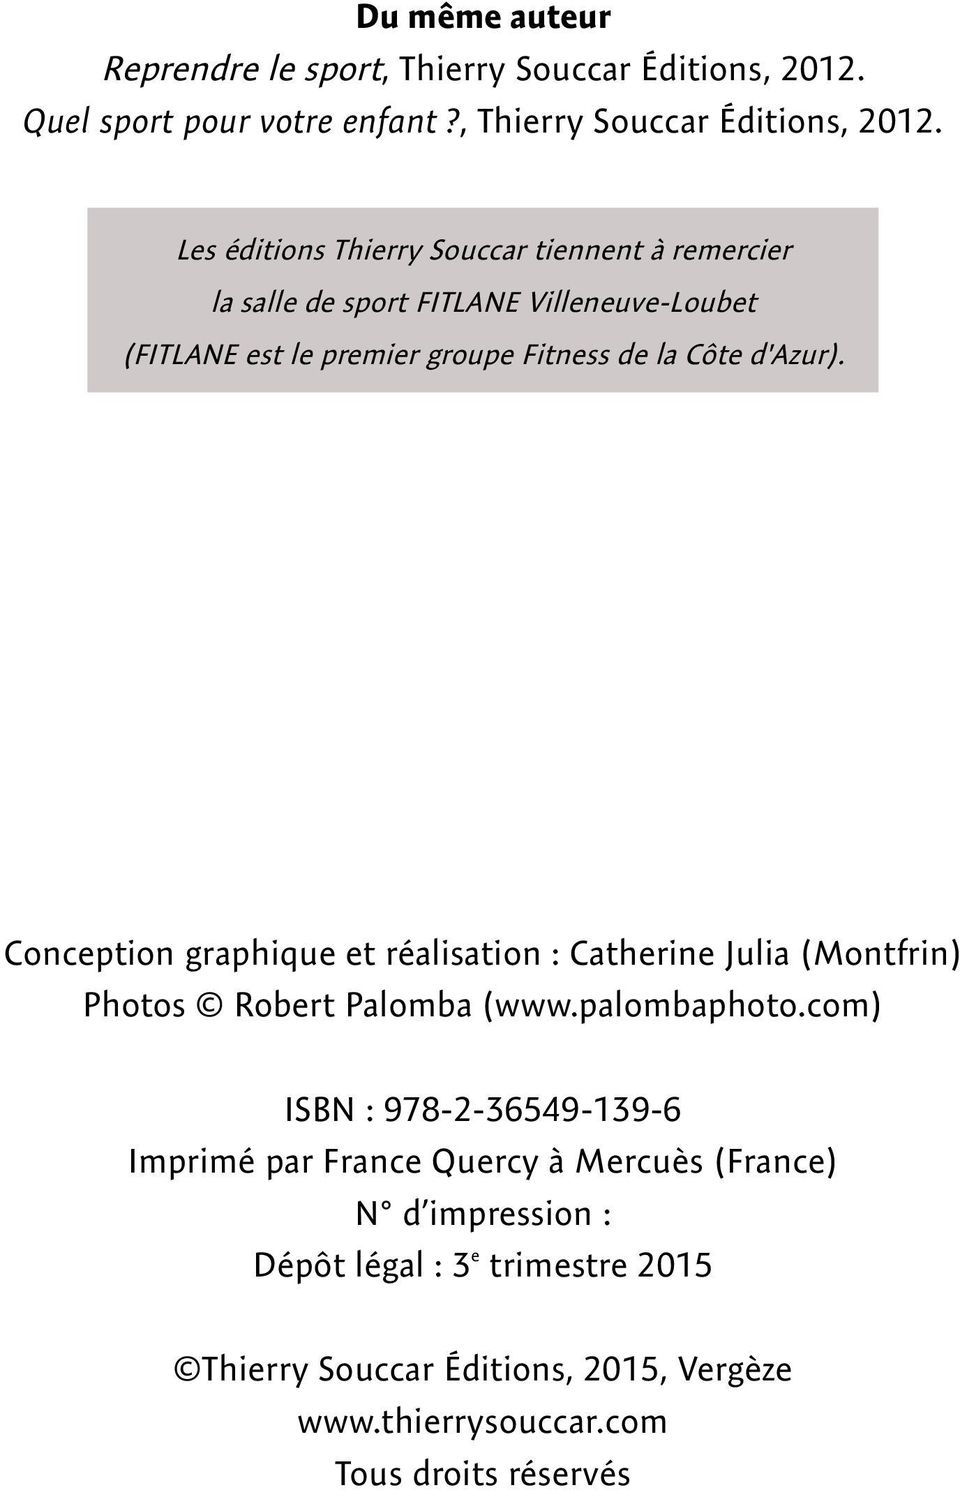 Les éditions Thierry Souccar tiennent à remercier la salle de sport FITLANE Villeneuve-Loubet (FITLANE est le premier groupe Fitness de la Côte